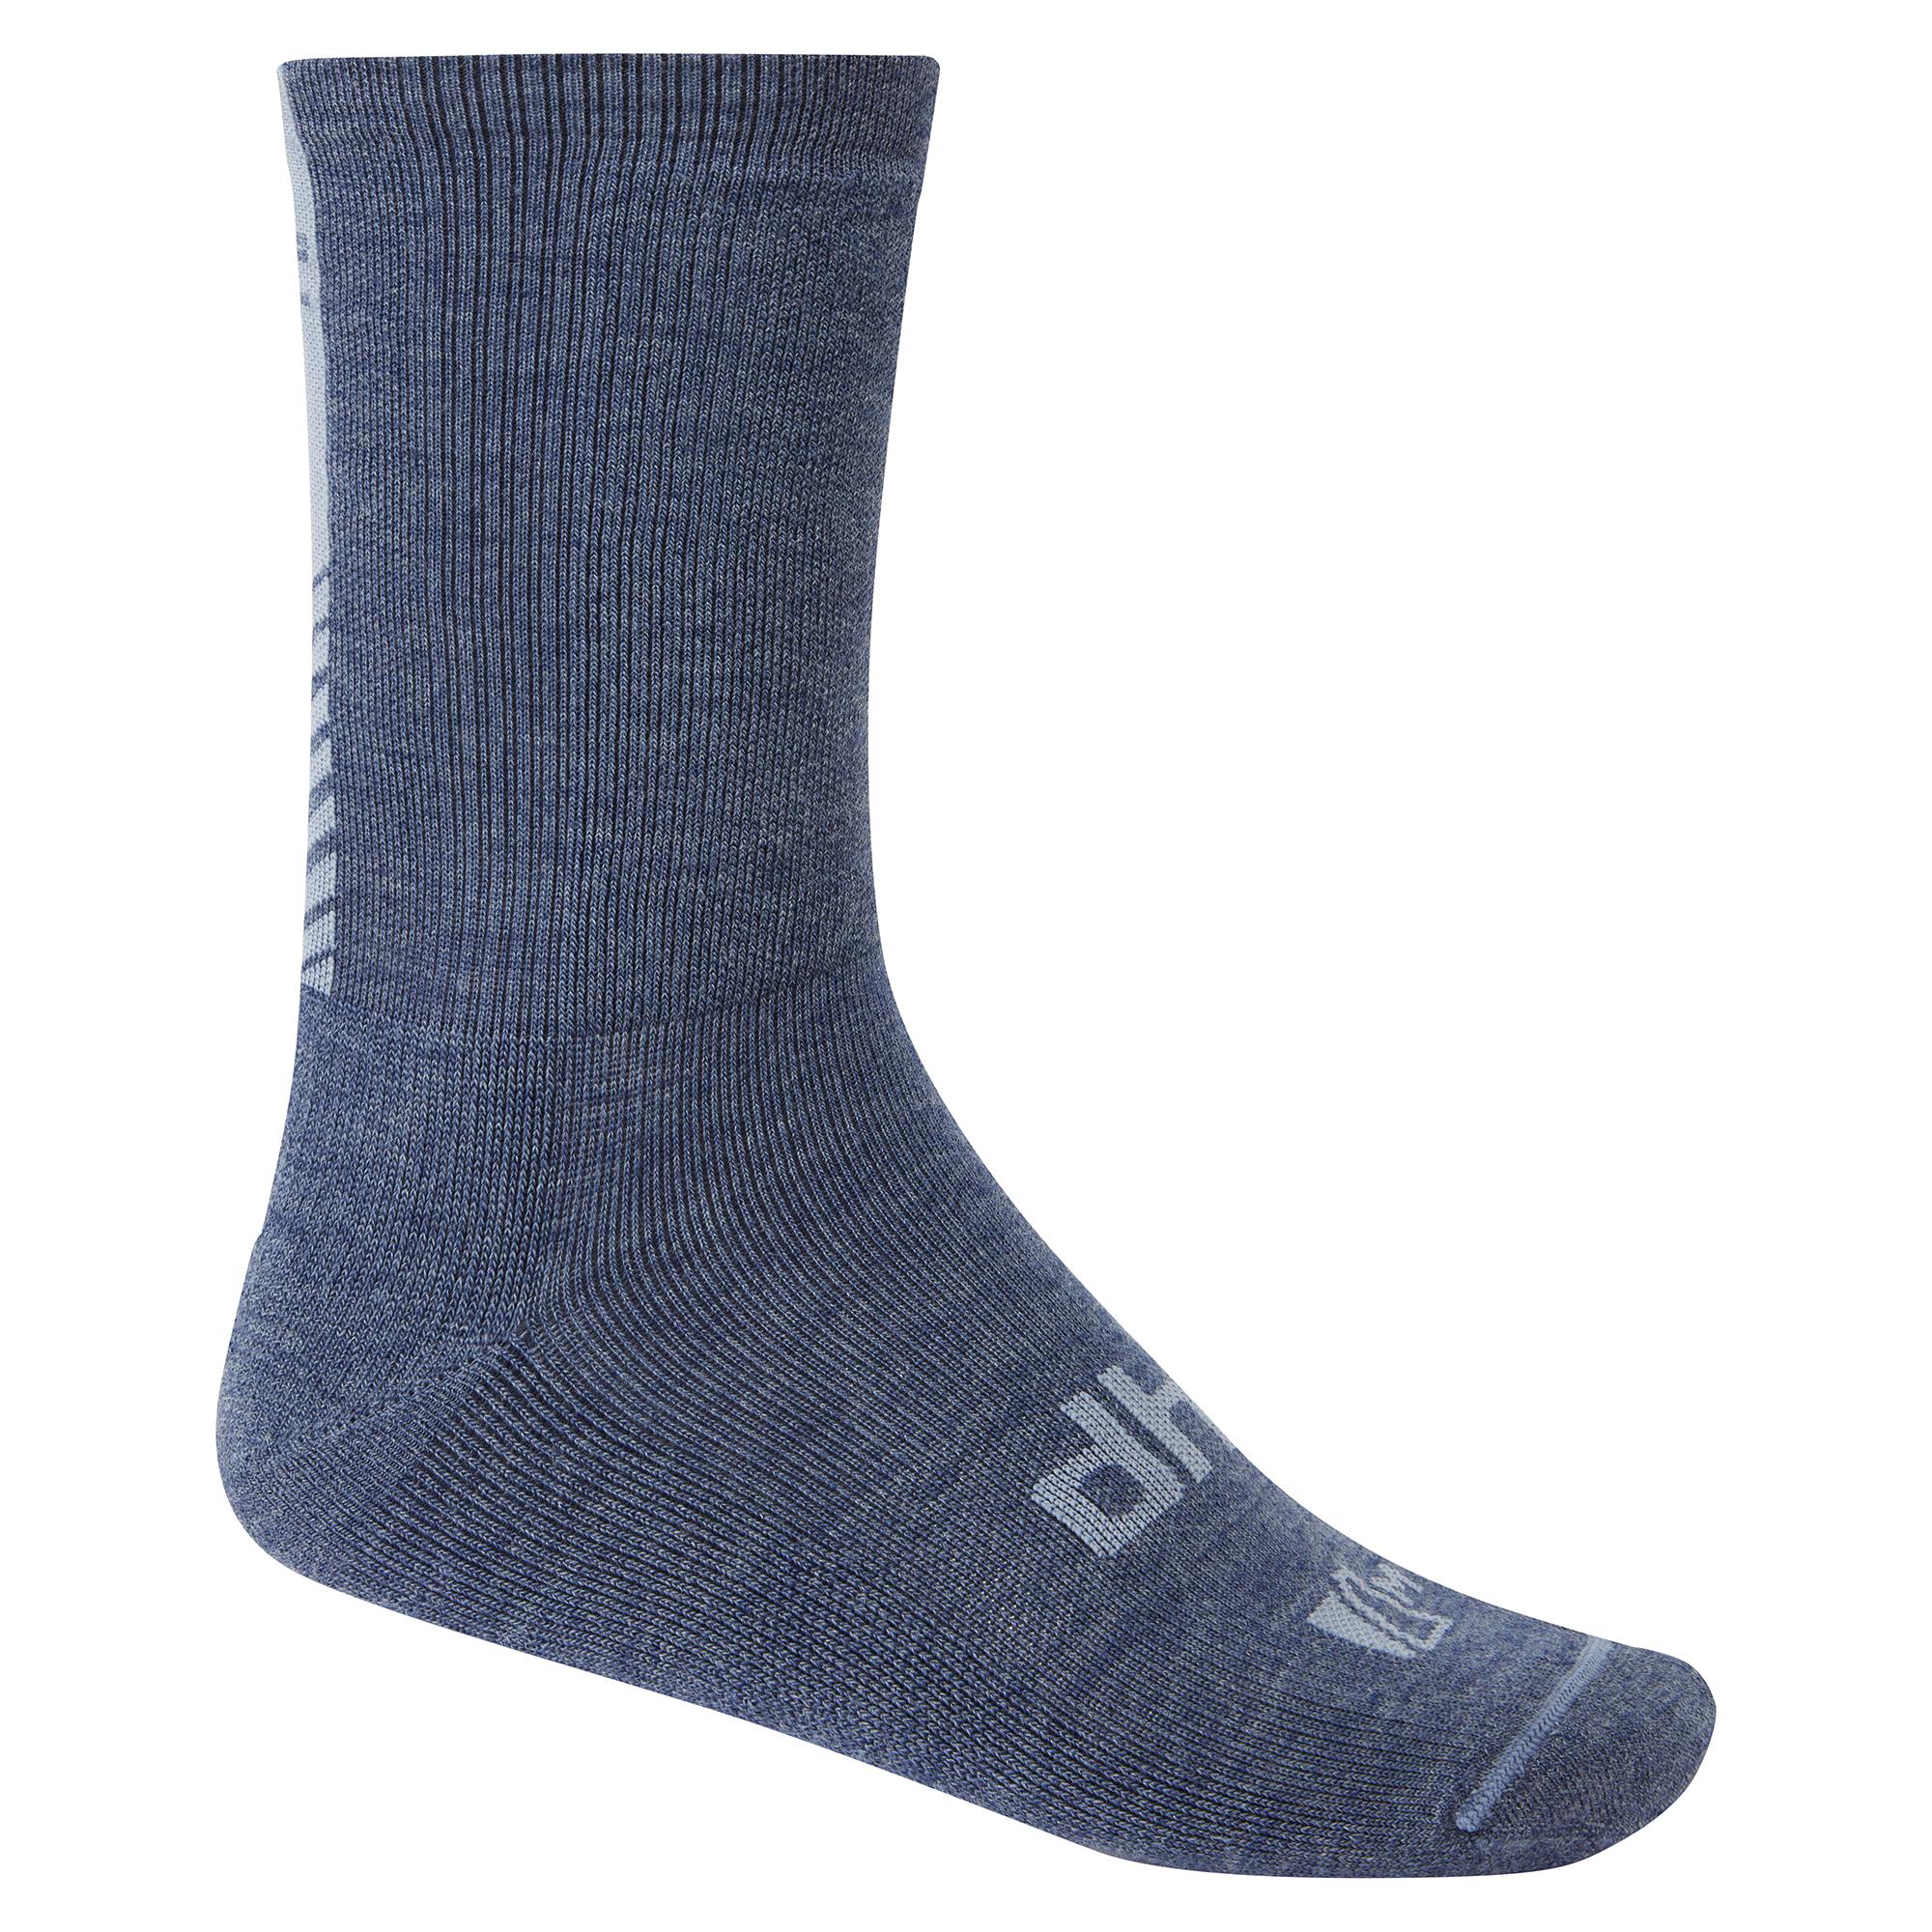 Dhb Winter Merino Trail Sock 2.0 - Slate Blue